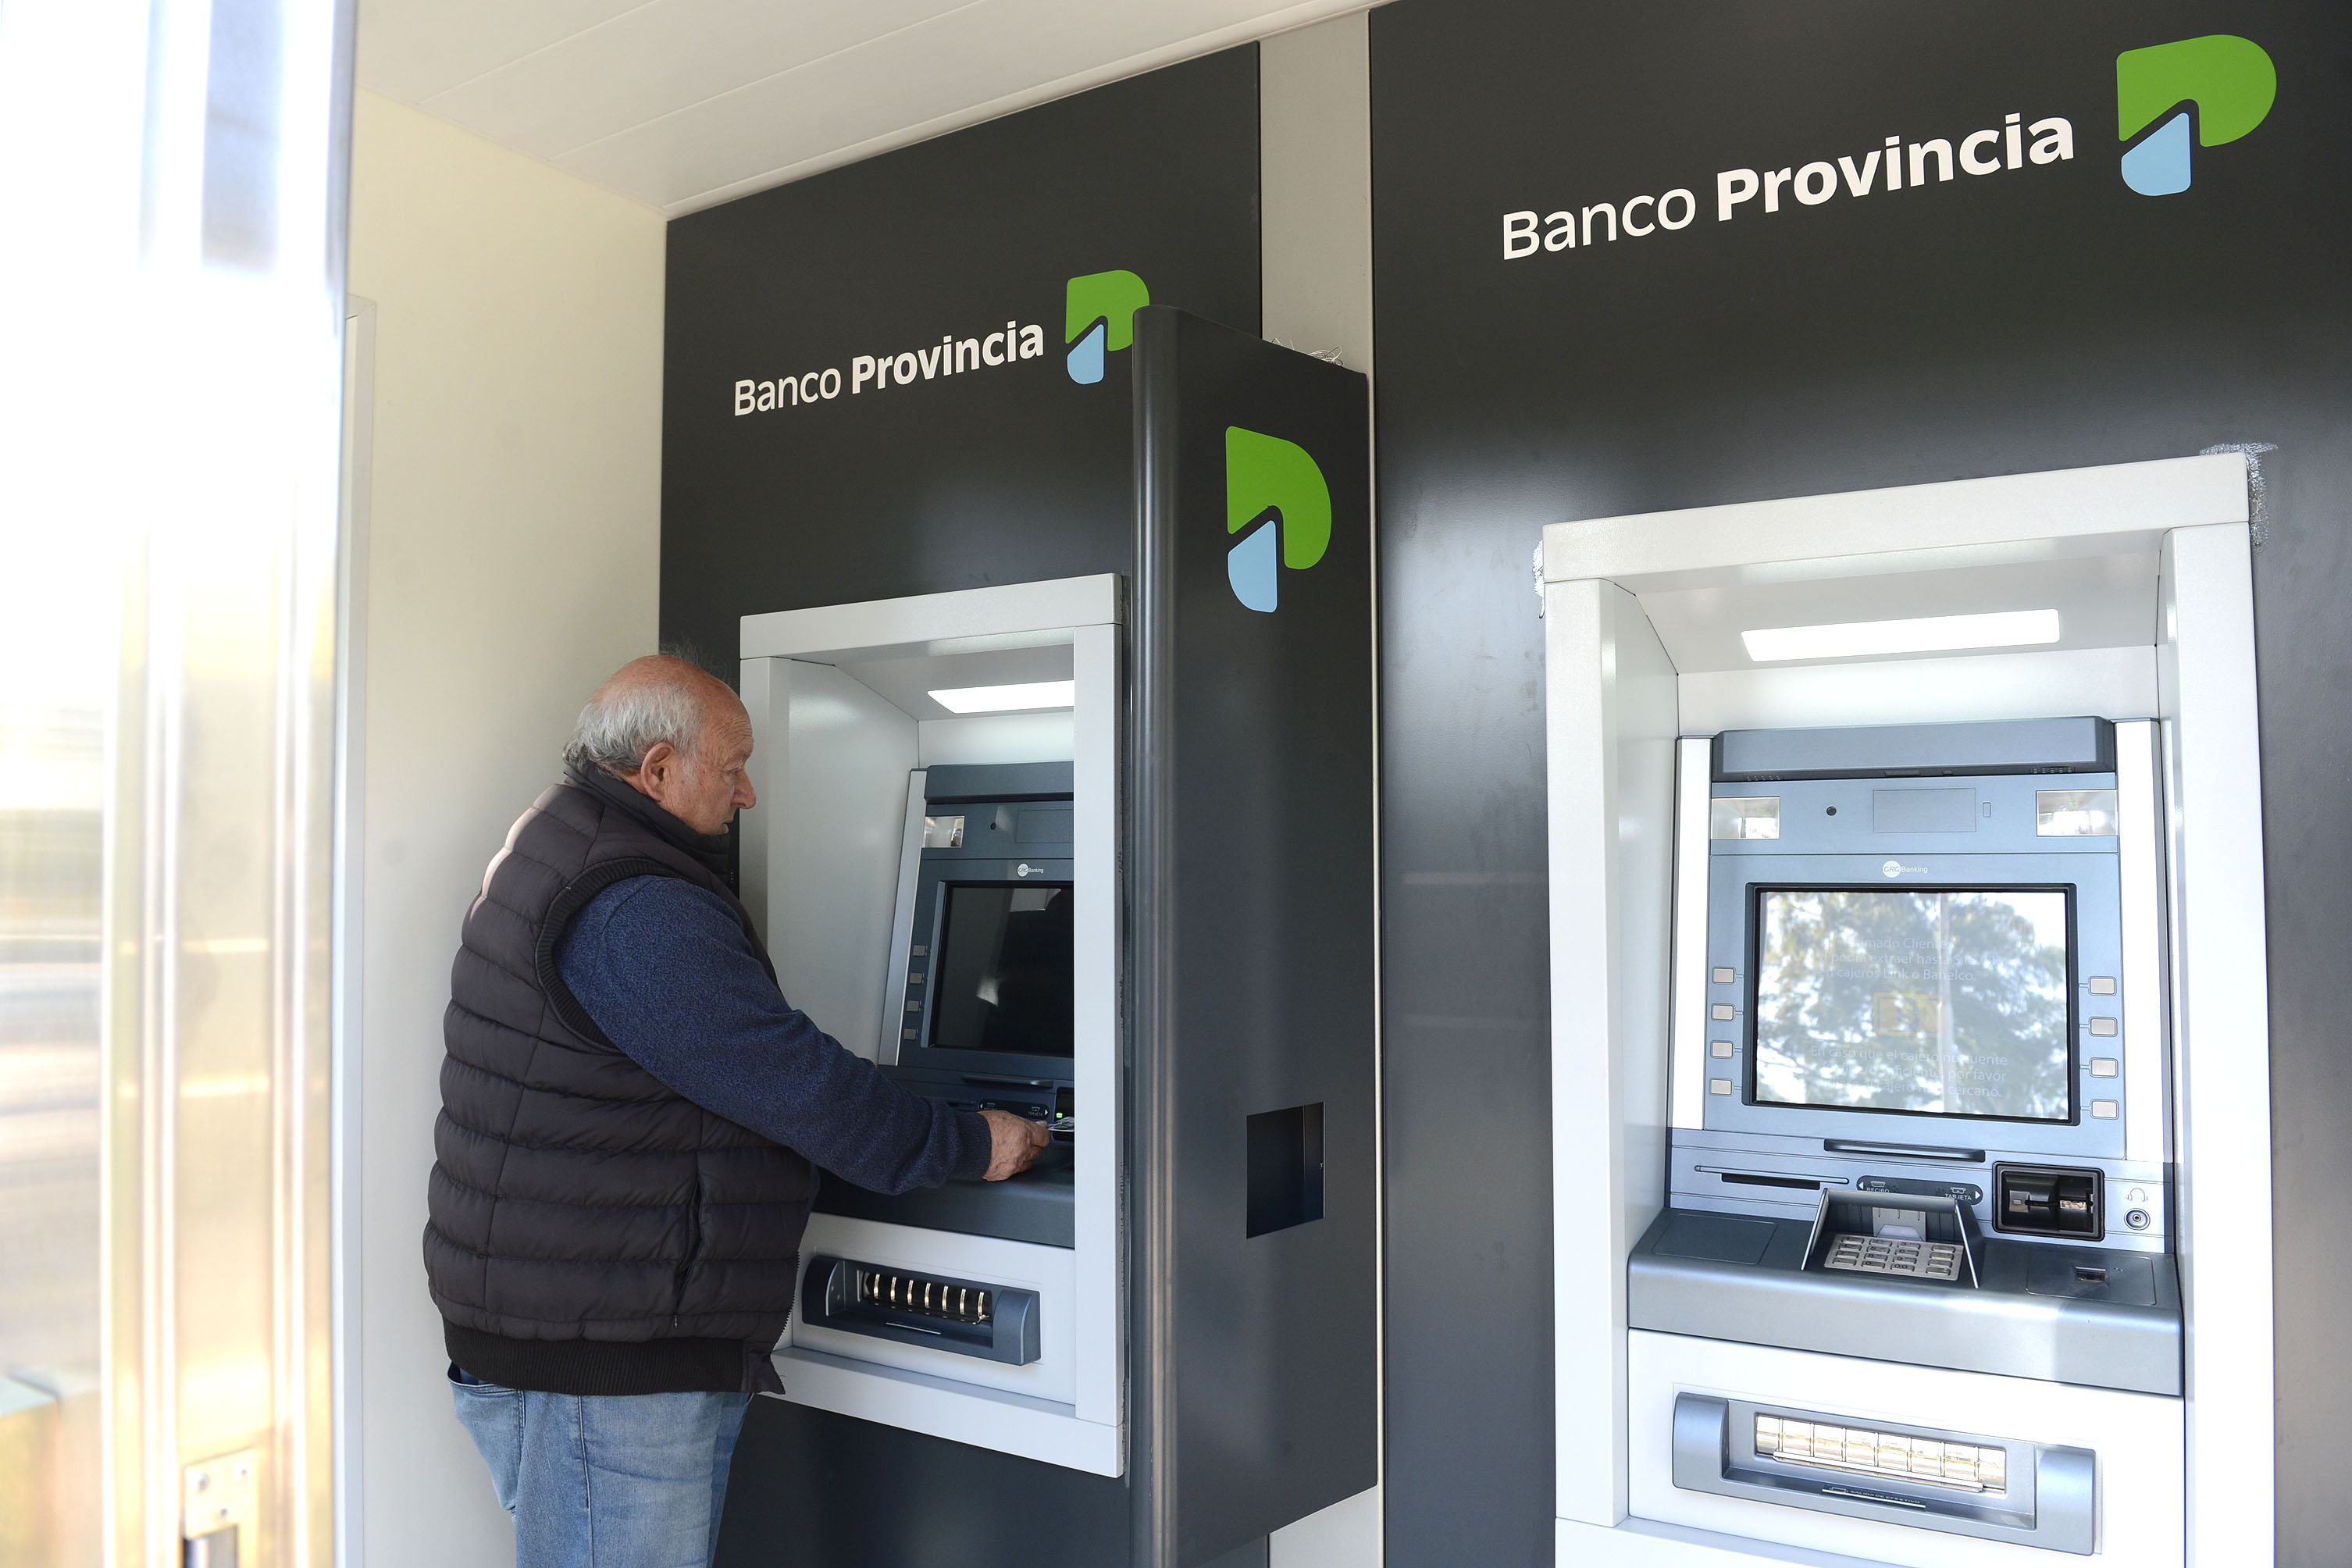 Mar del Plata sumó 4 nuevos cajeros automáticos de Banco Provincia